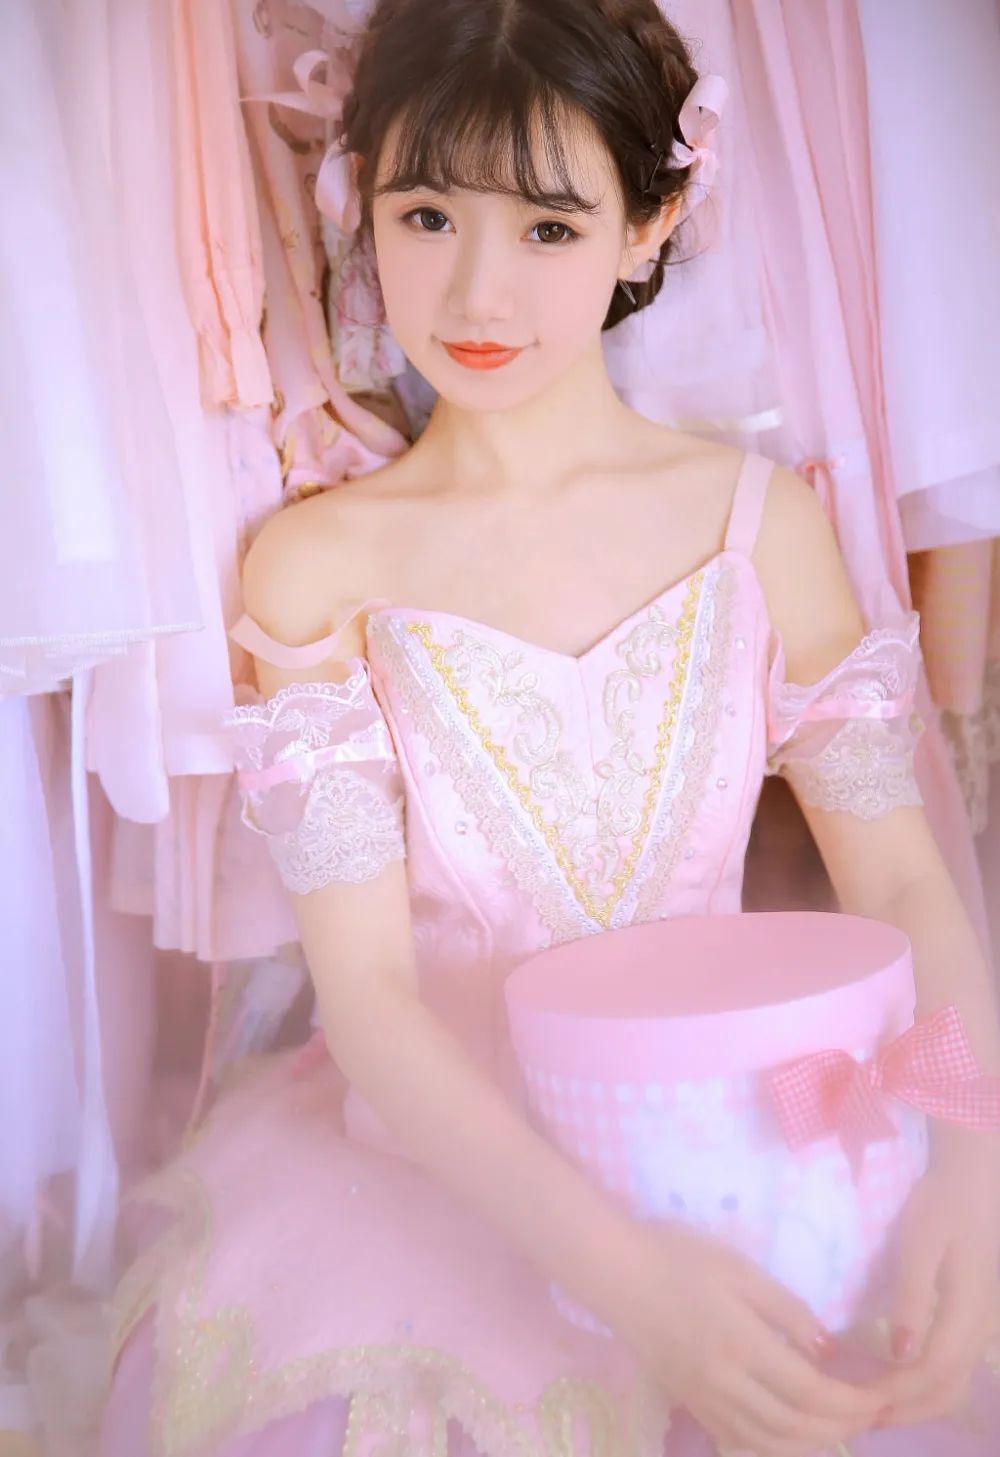 漂亮女孩 芭蕾舞公主裙 清纯甜美